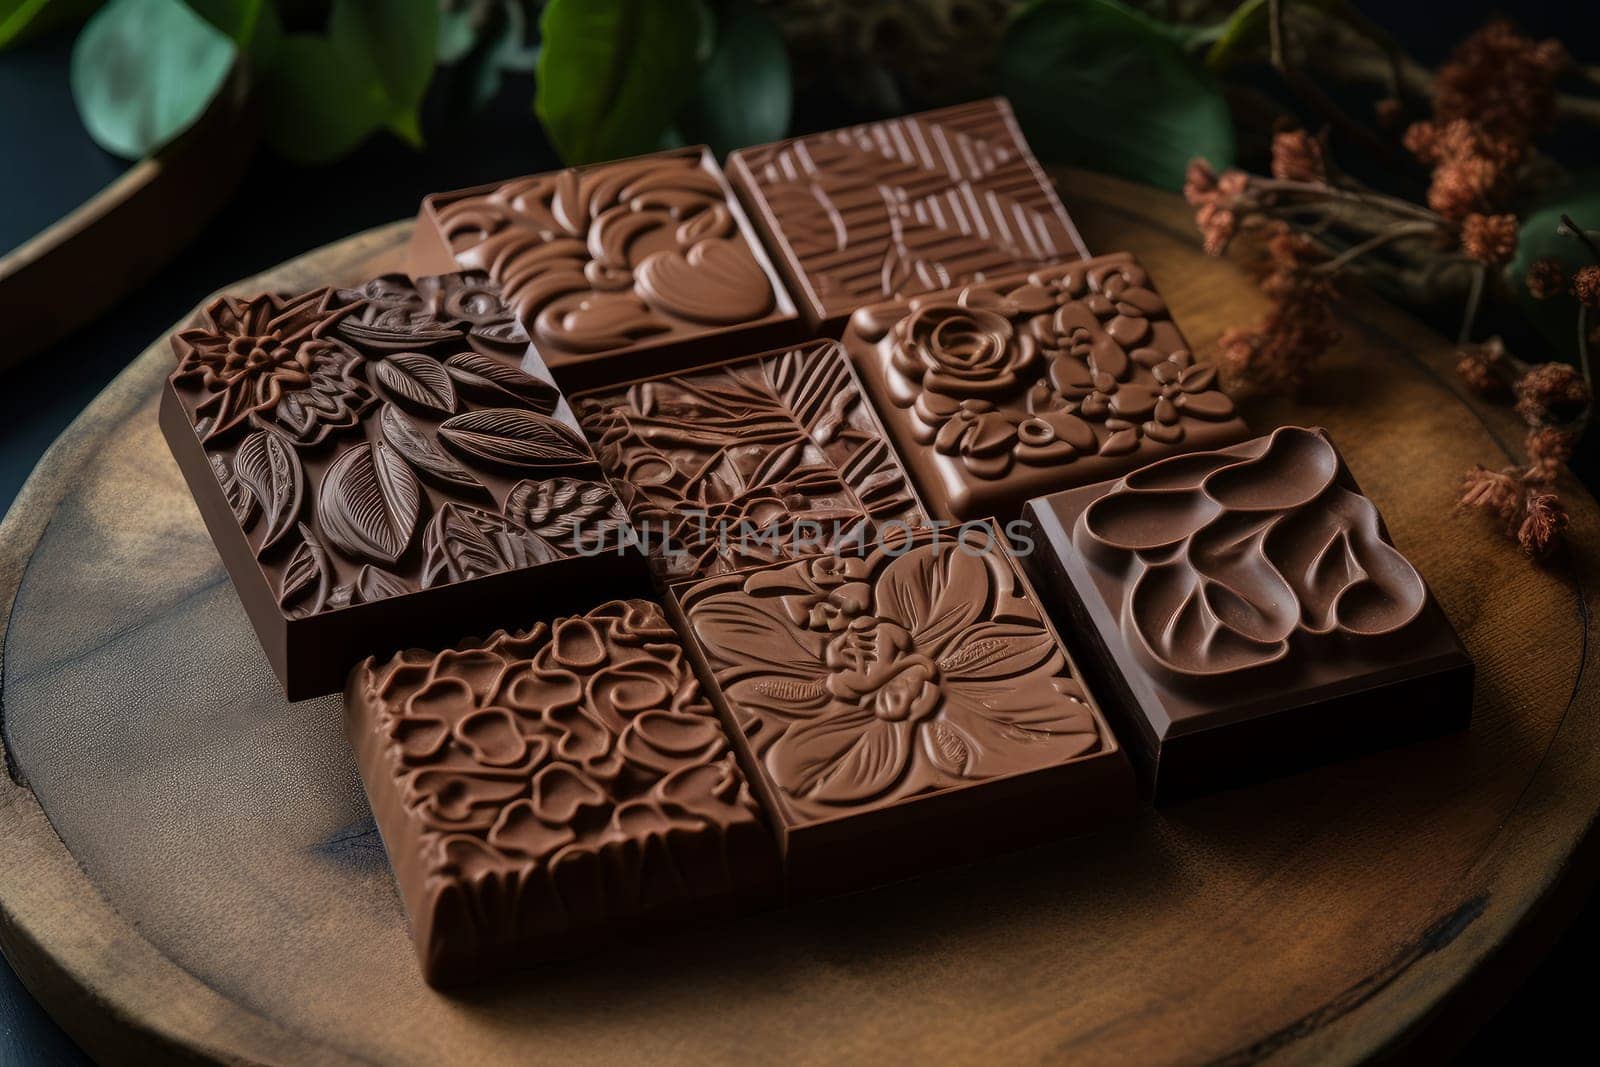 Sustanable Handmade vegan chocolate. Dessert truffle. Generate Ai